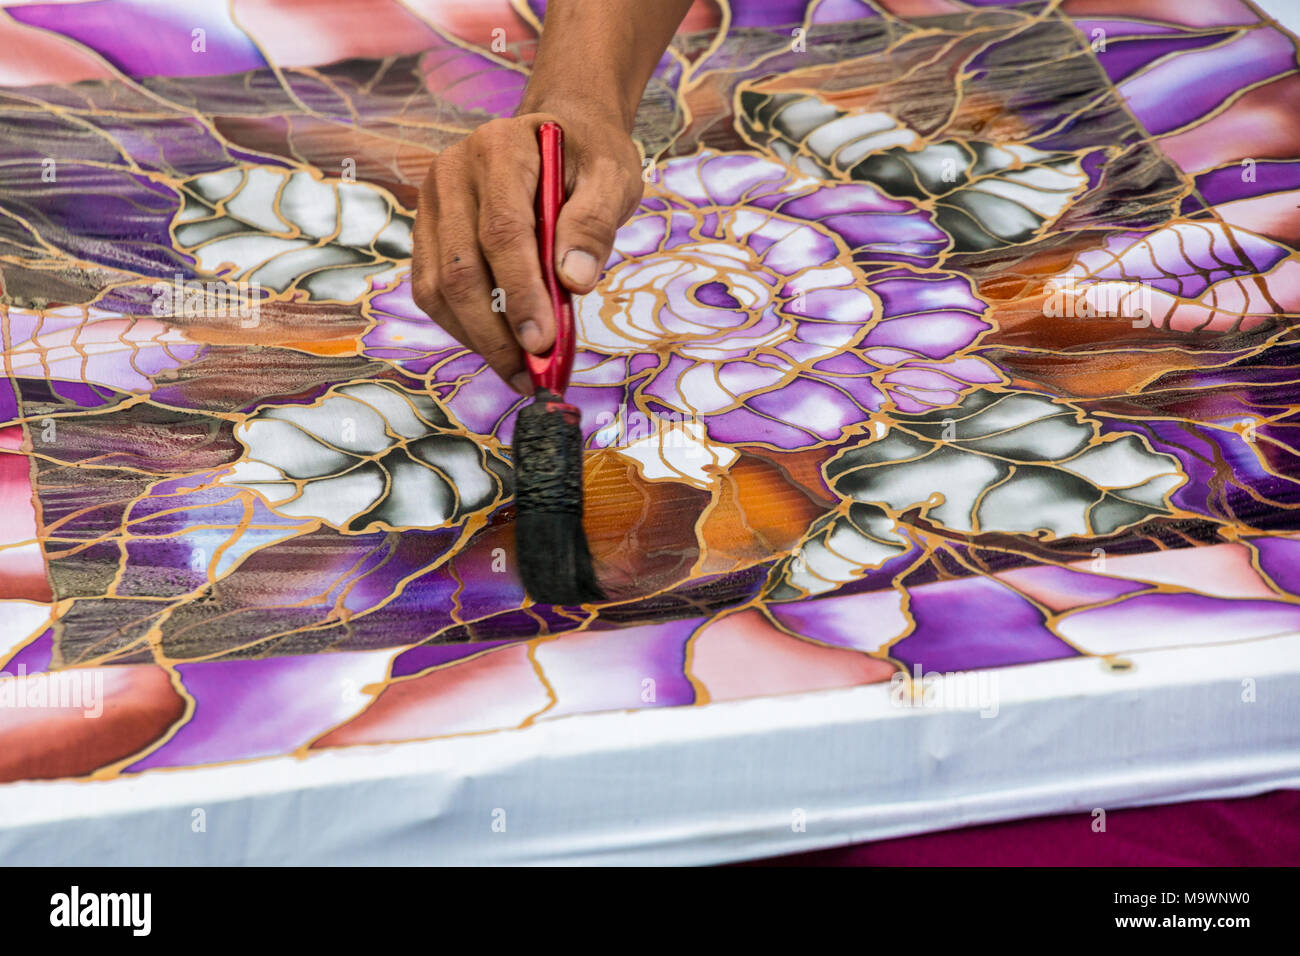 Close-up de un artesano batik malasio enseñar cómo cepillarse los colores de pintura de un tejido con el popular motivo de hojas y flores. Foto de stock